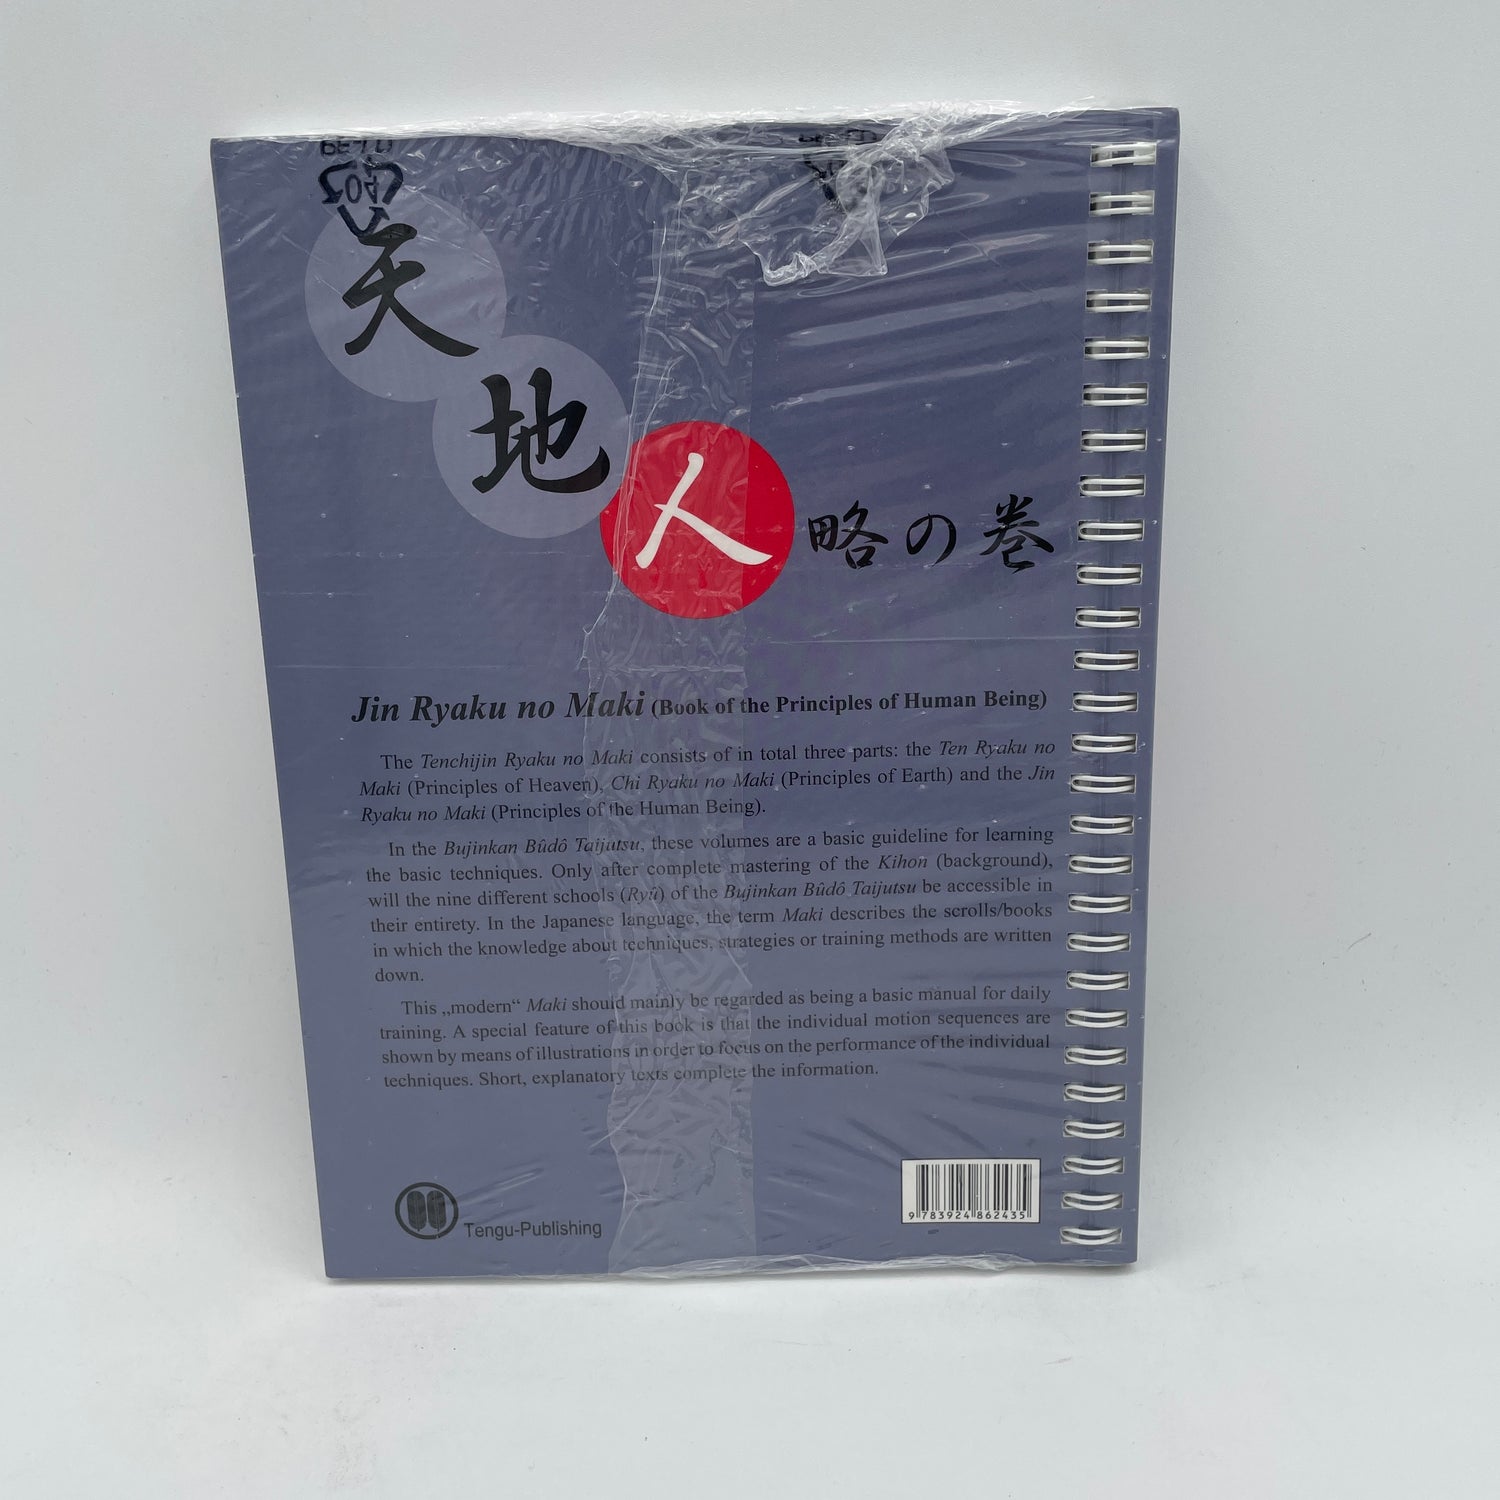 Jin Ryaku no Maki (Principles of Man) Book by Carsten Kuhn